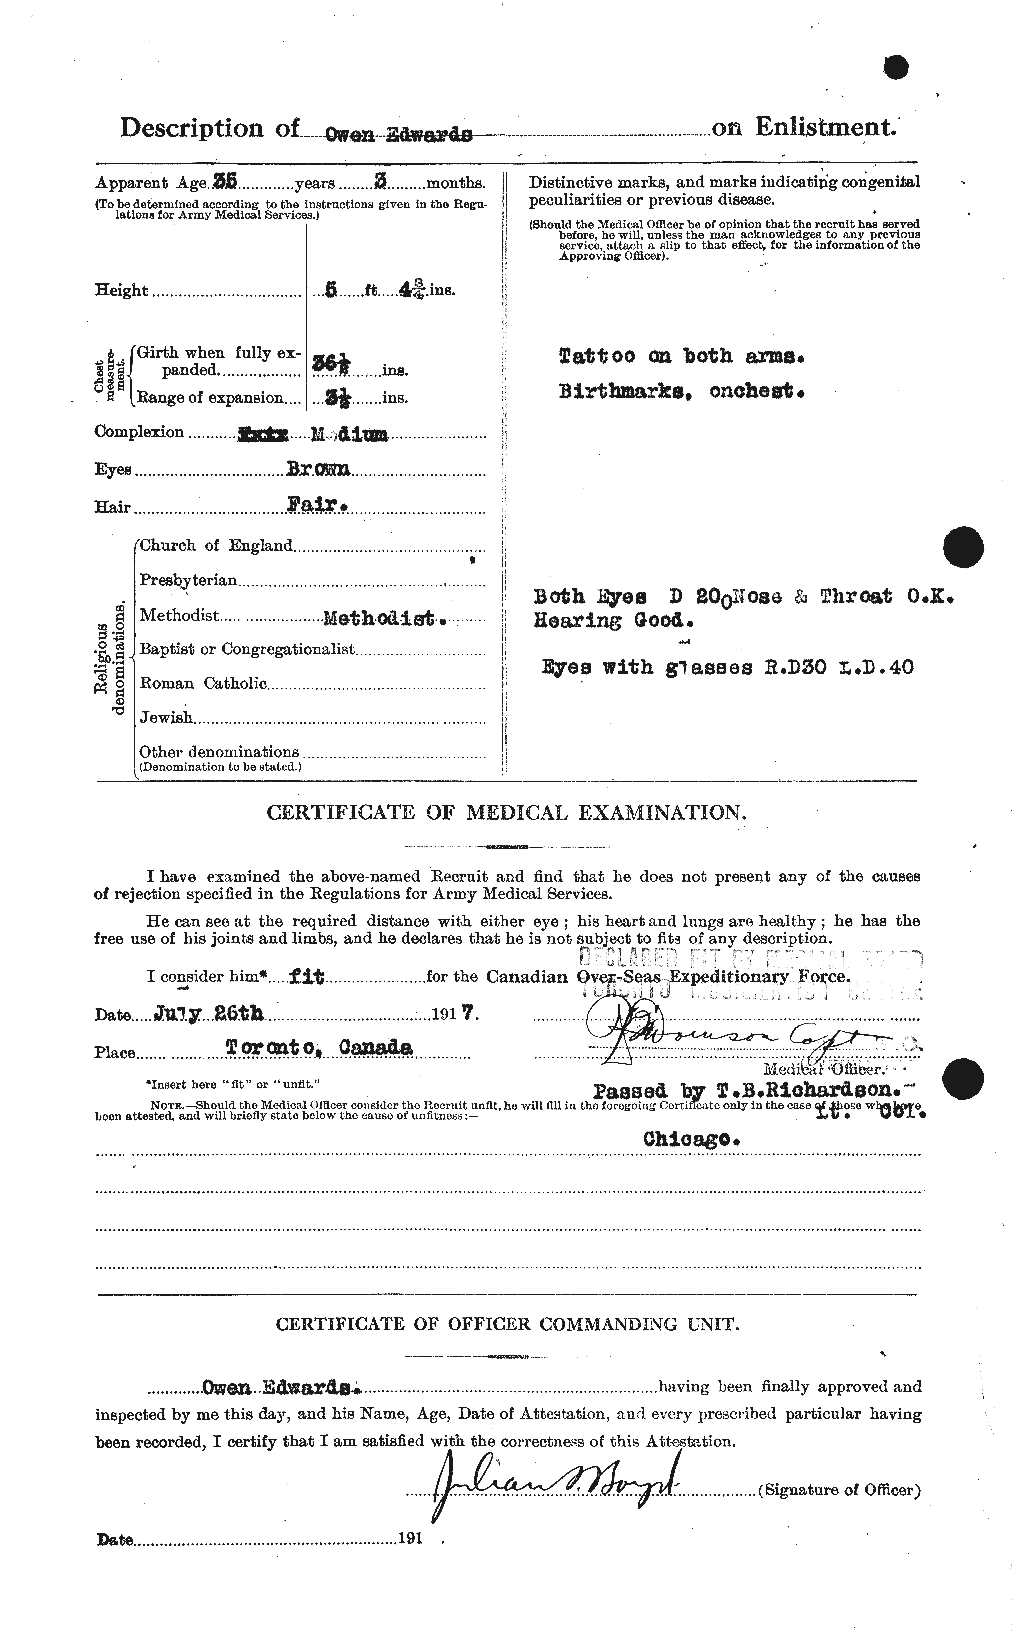 Dossiers du Personnel de la Première Guerre mondiale - CEC 310228b